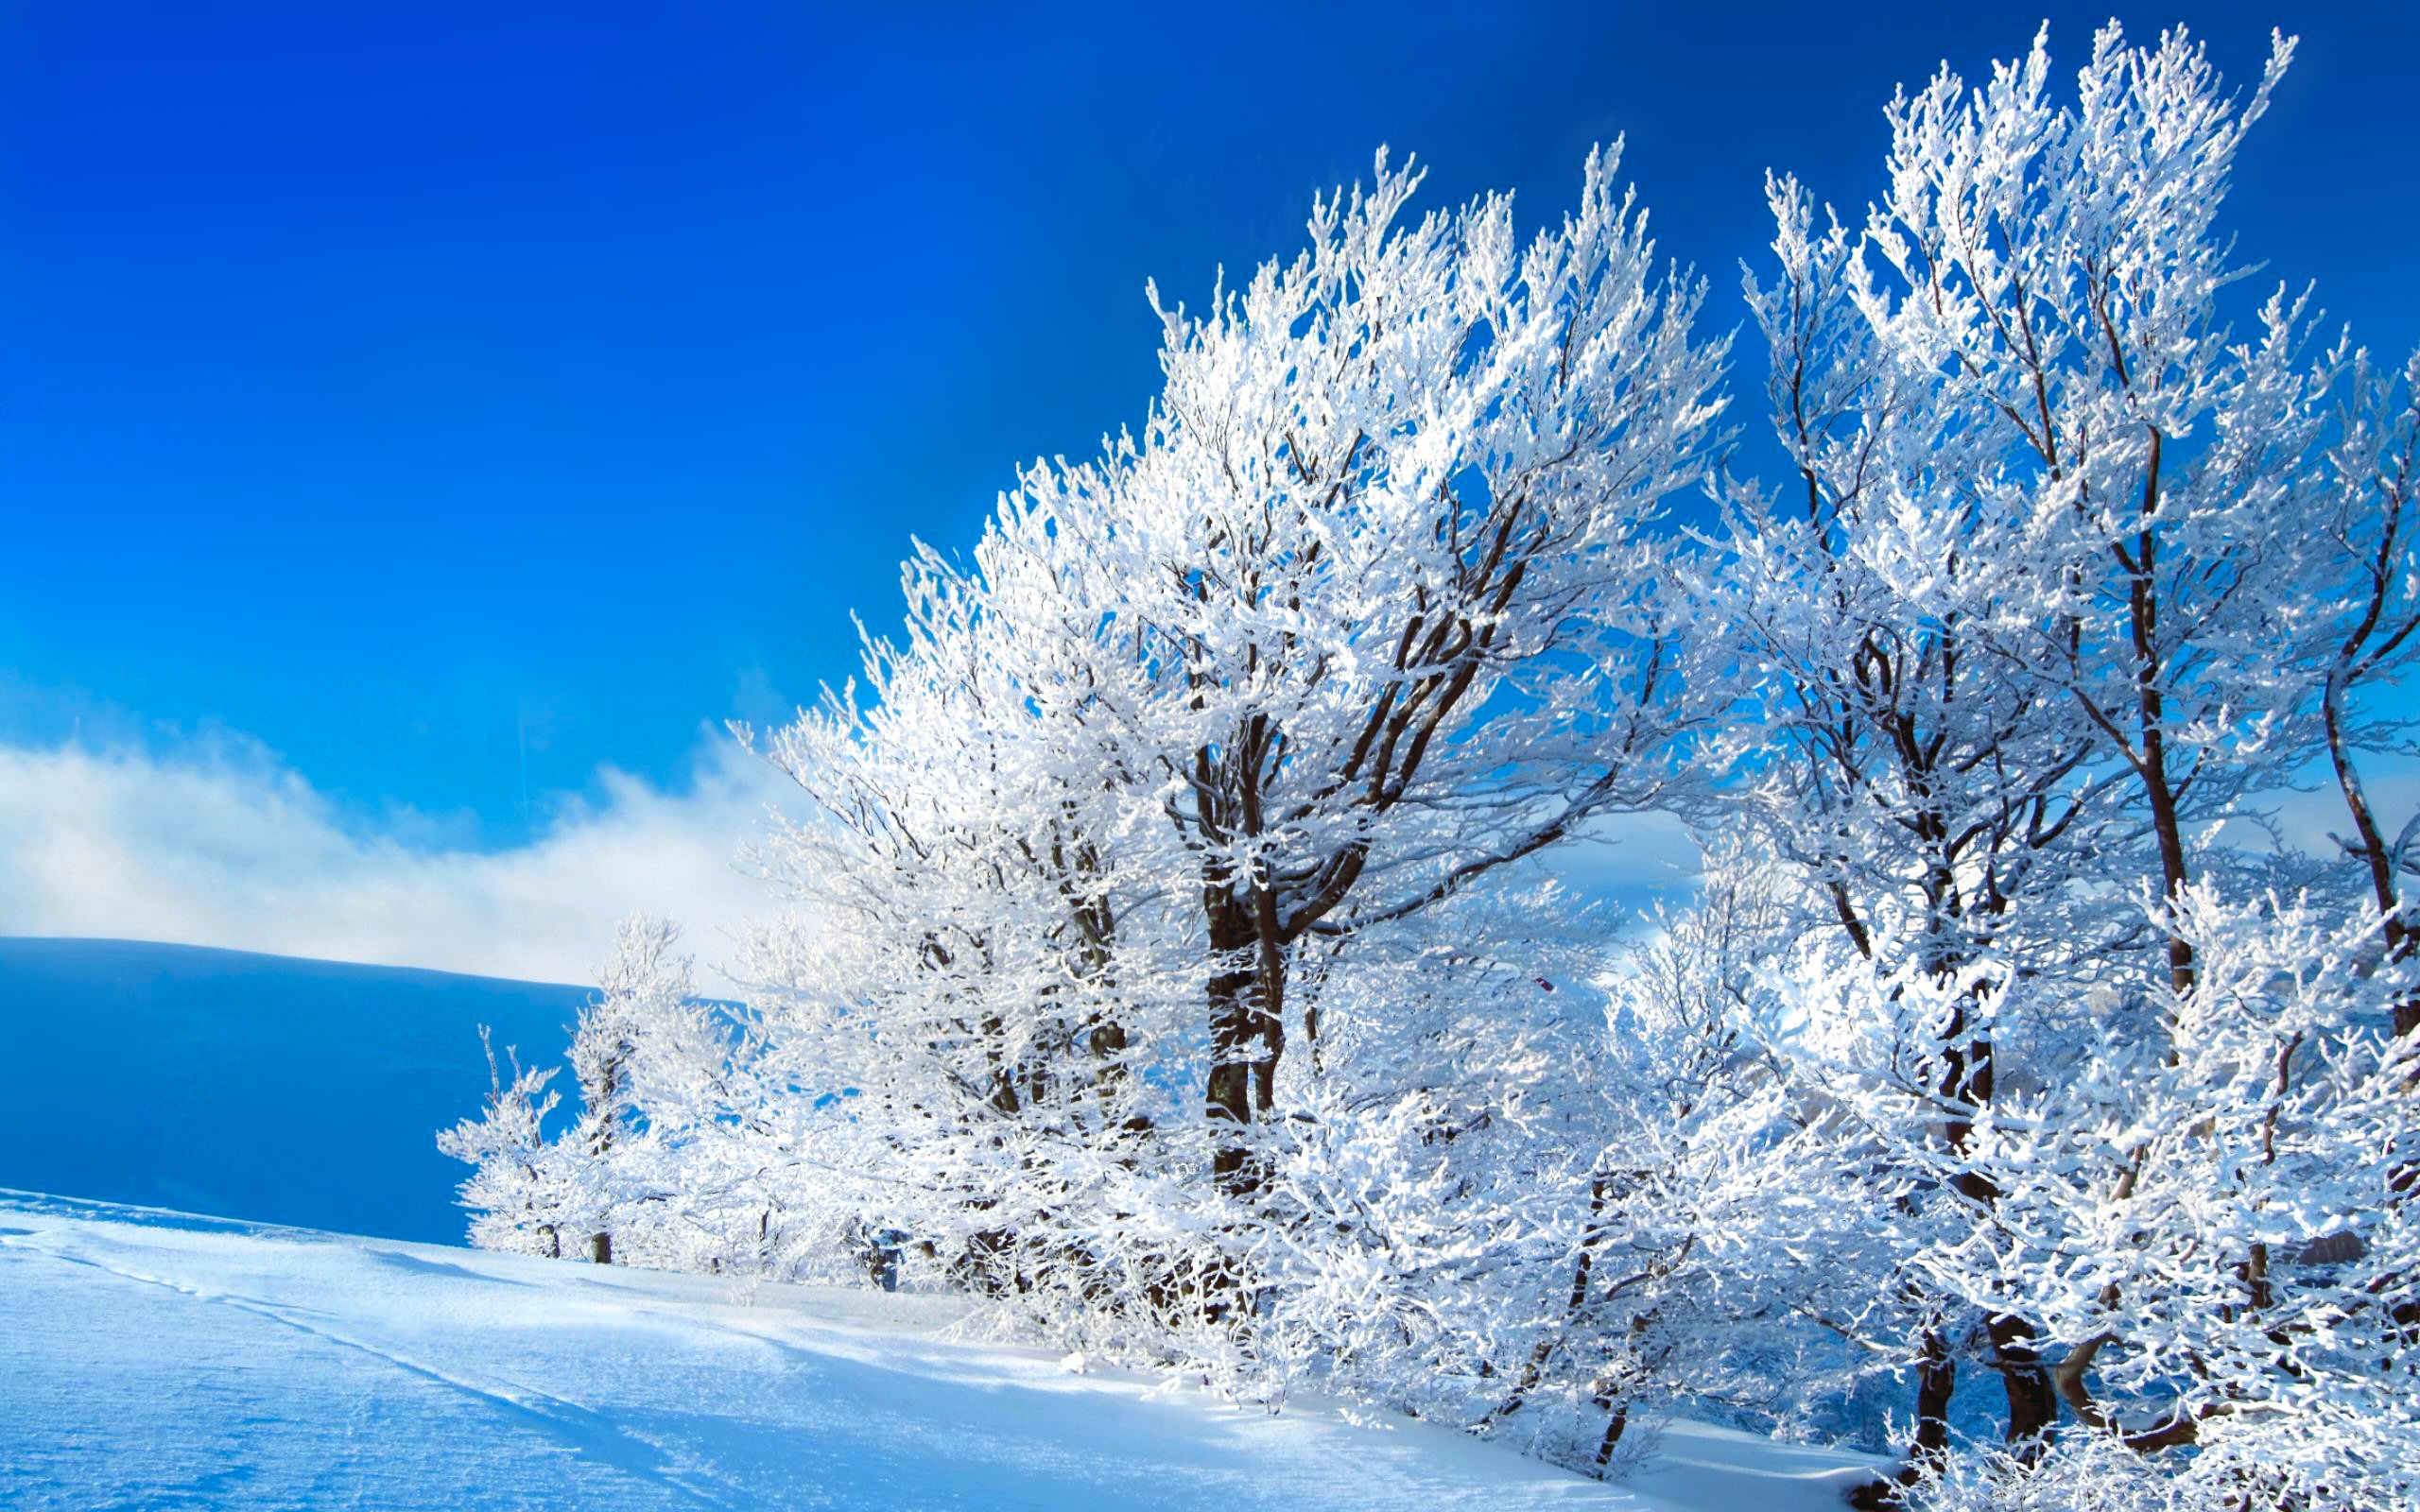 Скачать обои бесплатно Зима, Природа, Снег, Синий, Белый, Земля/природа картинка на рабочий стол ПК